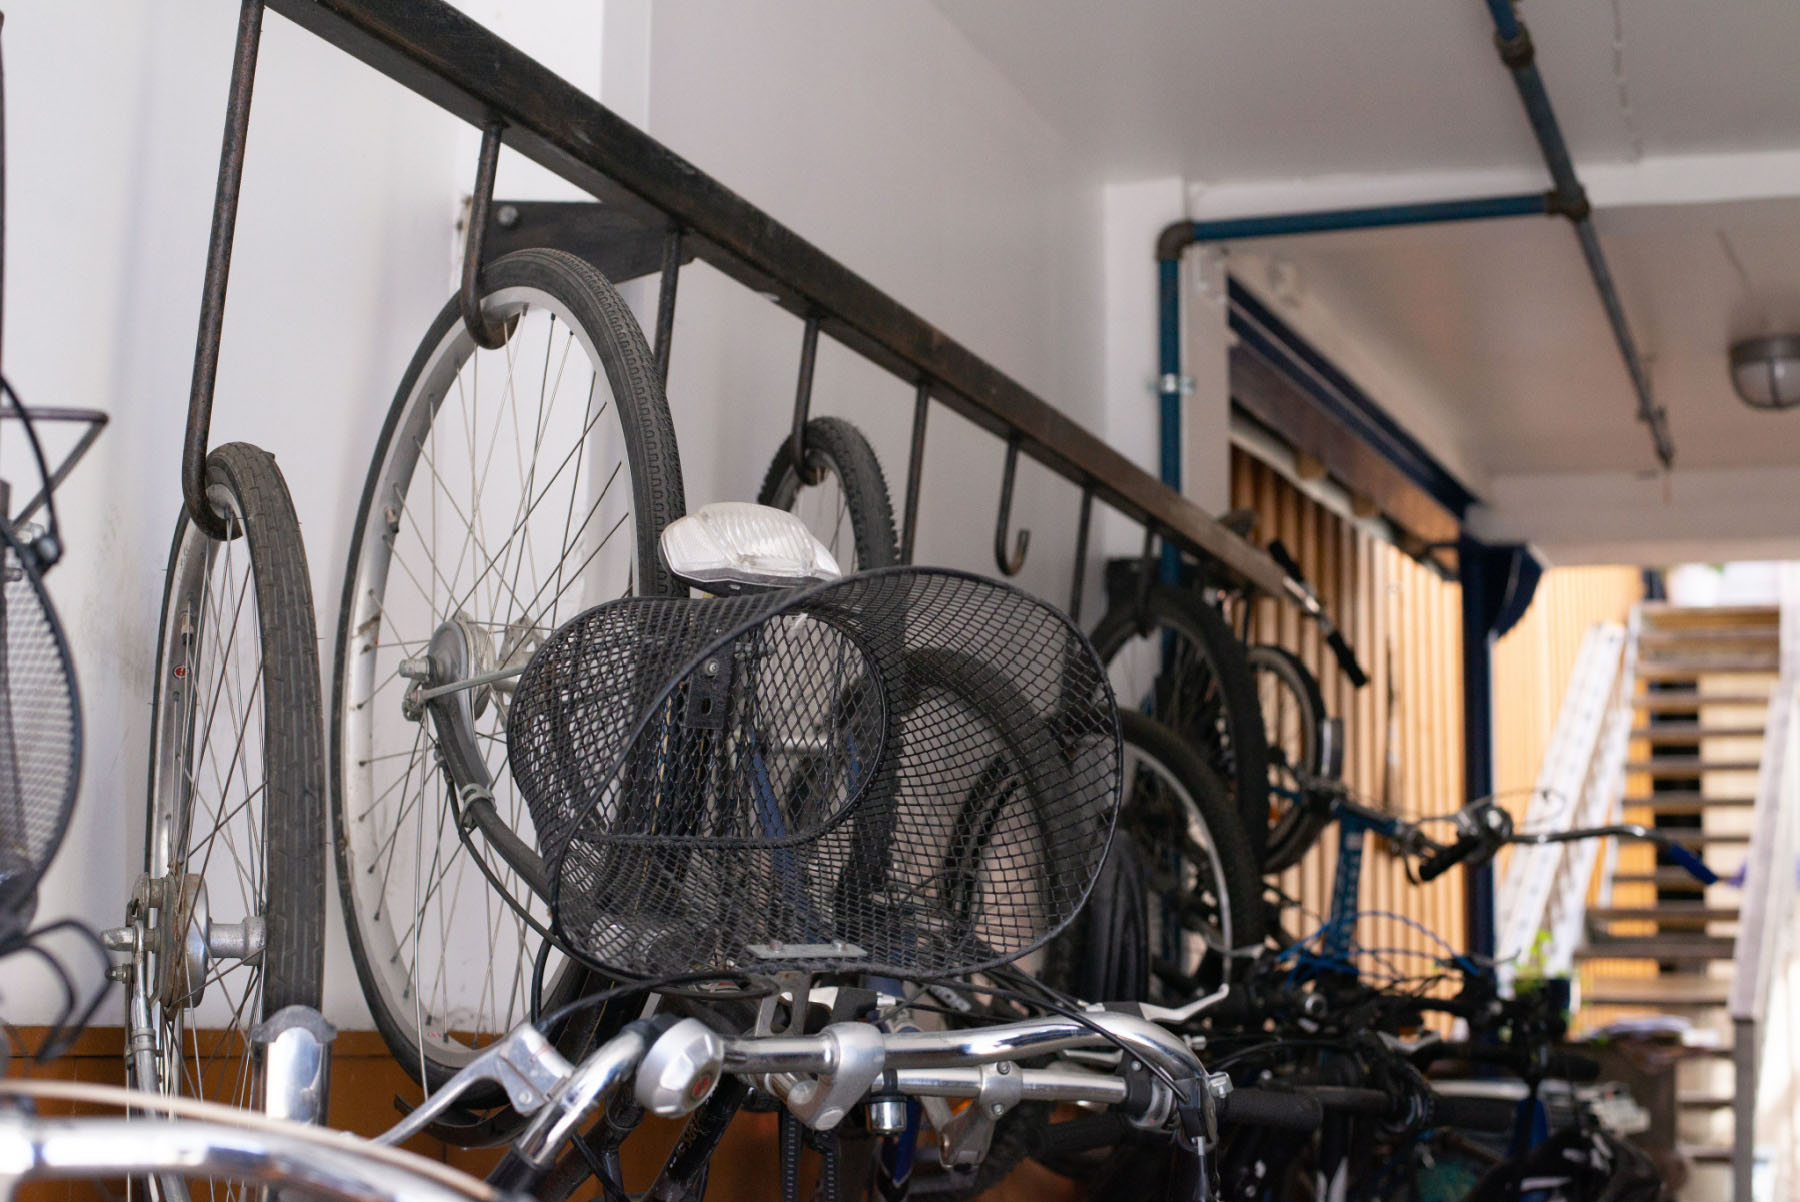 Abgestellte Fahrräder, die am Vorderrad hängen